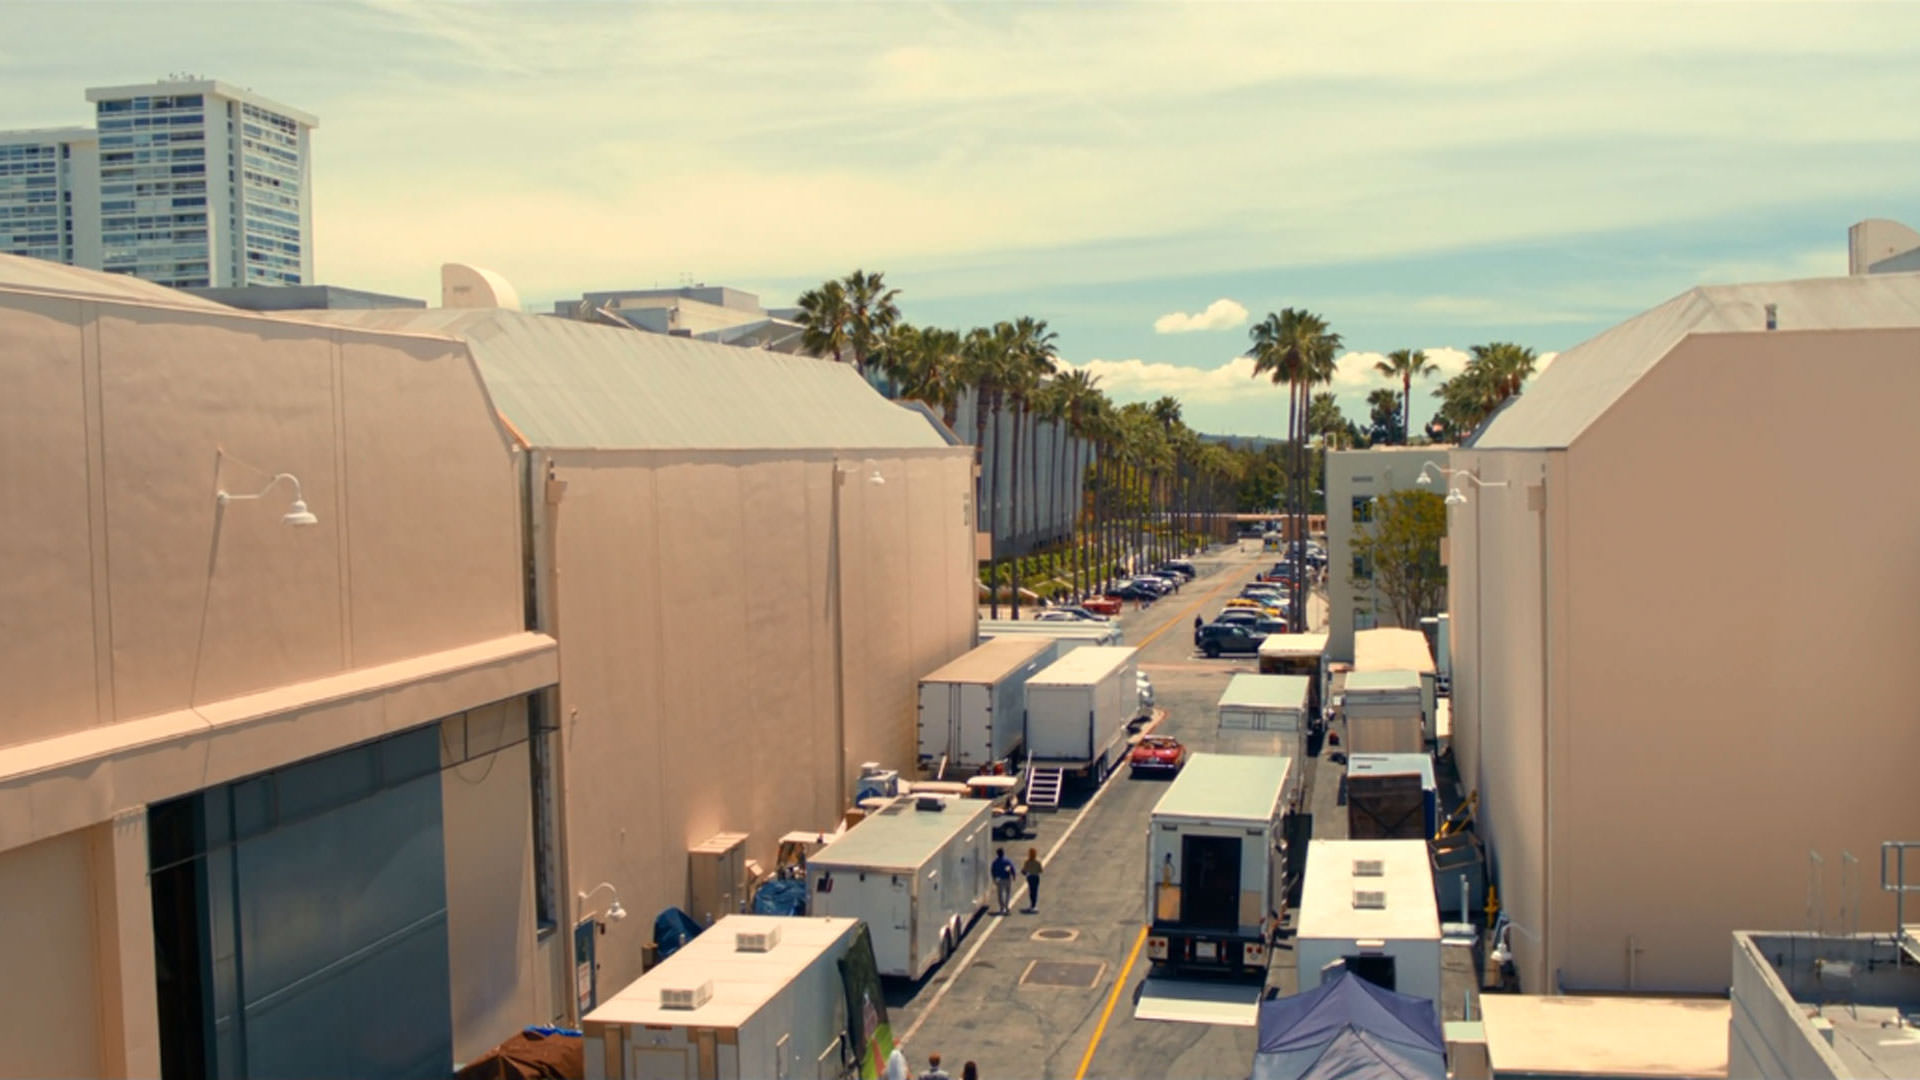 نمایی باز از یک استودیوی هالیوودی در فیلم داستان آمریکایی به کارگردانی کورد جفرسون